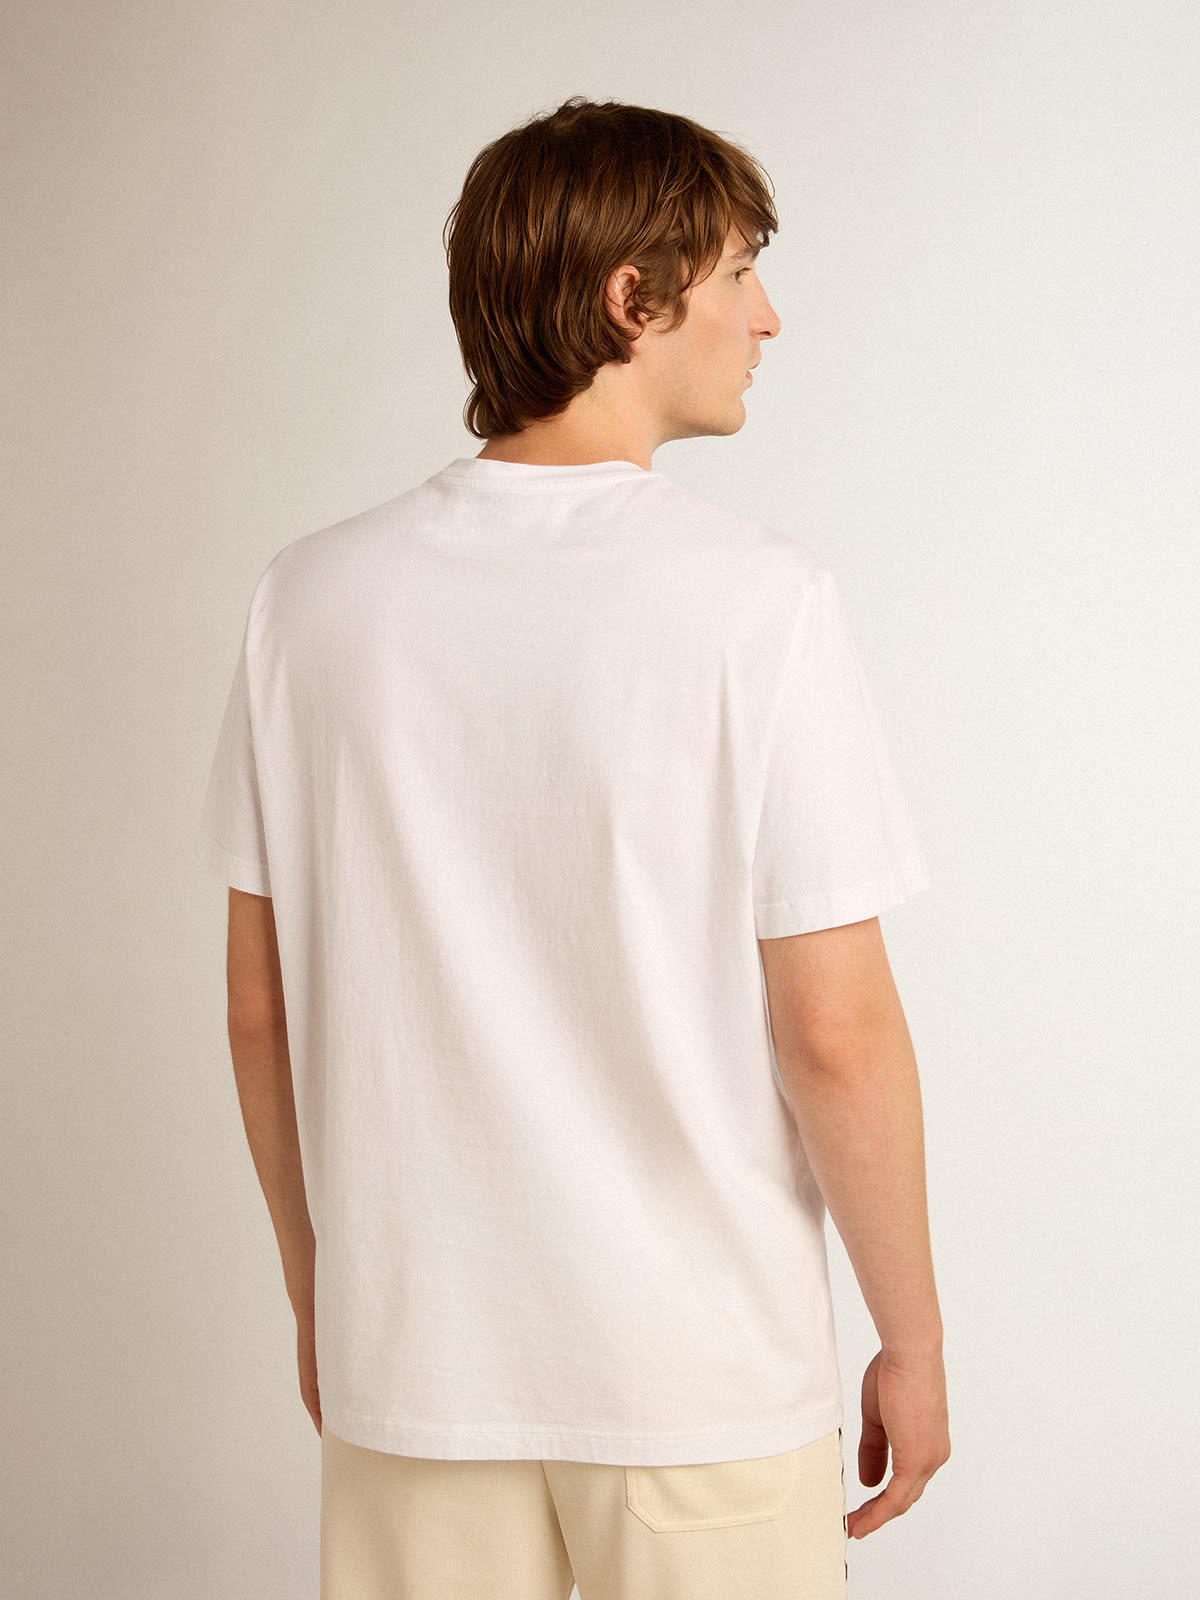 Golden Goose - Weißes T-Shirt aus der Star Collection mit schwarzem Stern auf der Vorderseite in 